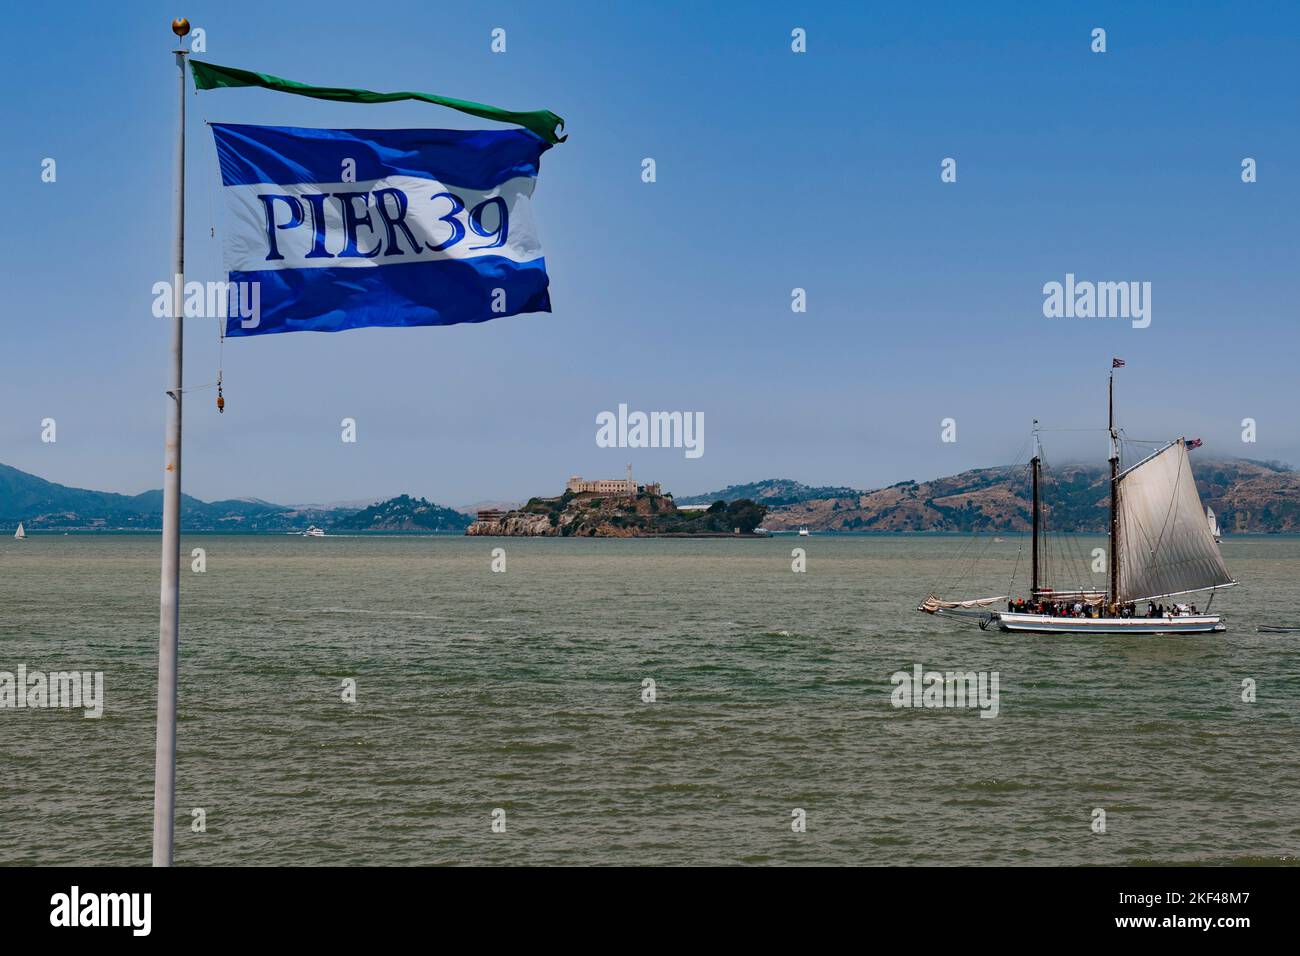 Fahne von Pier 39 und historisches Segelboot in der San Francisco Bay, hinten die Insel Alcatraz, San Francisco, Kalifornien, USA, Nordamerika Stock Photo